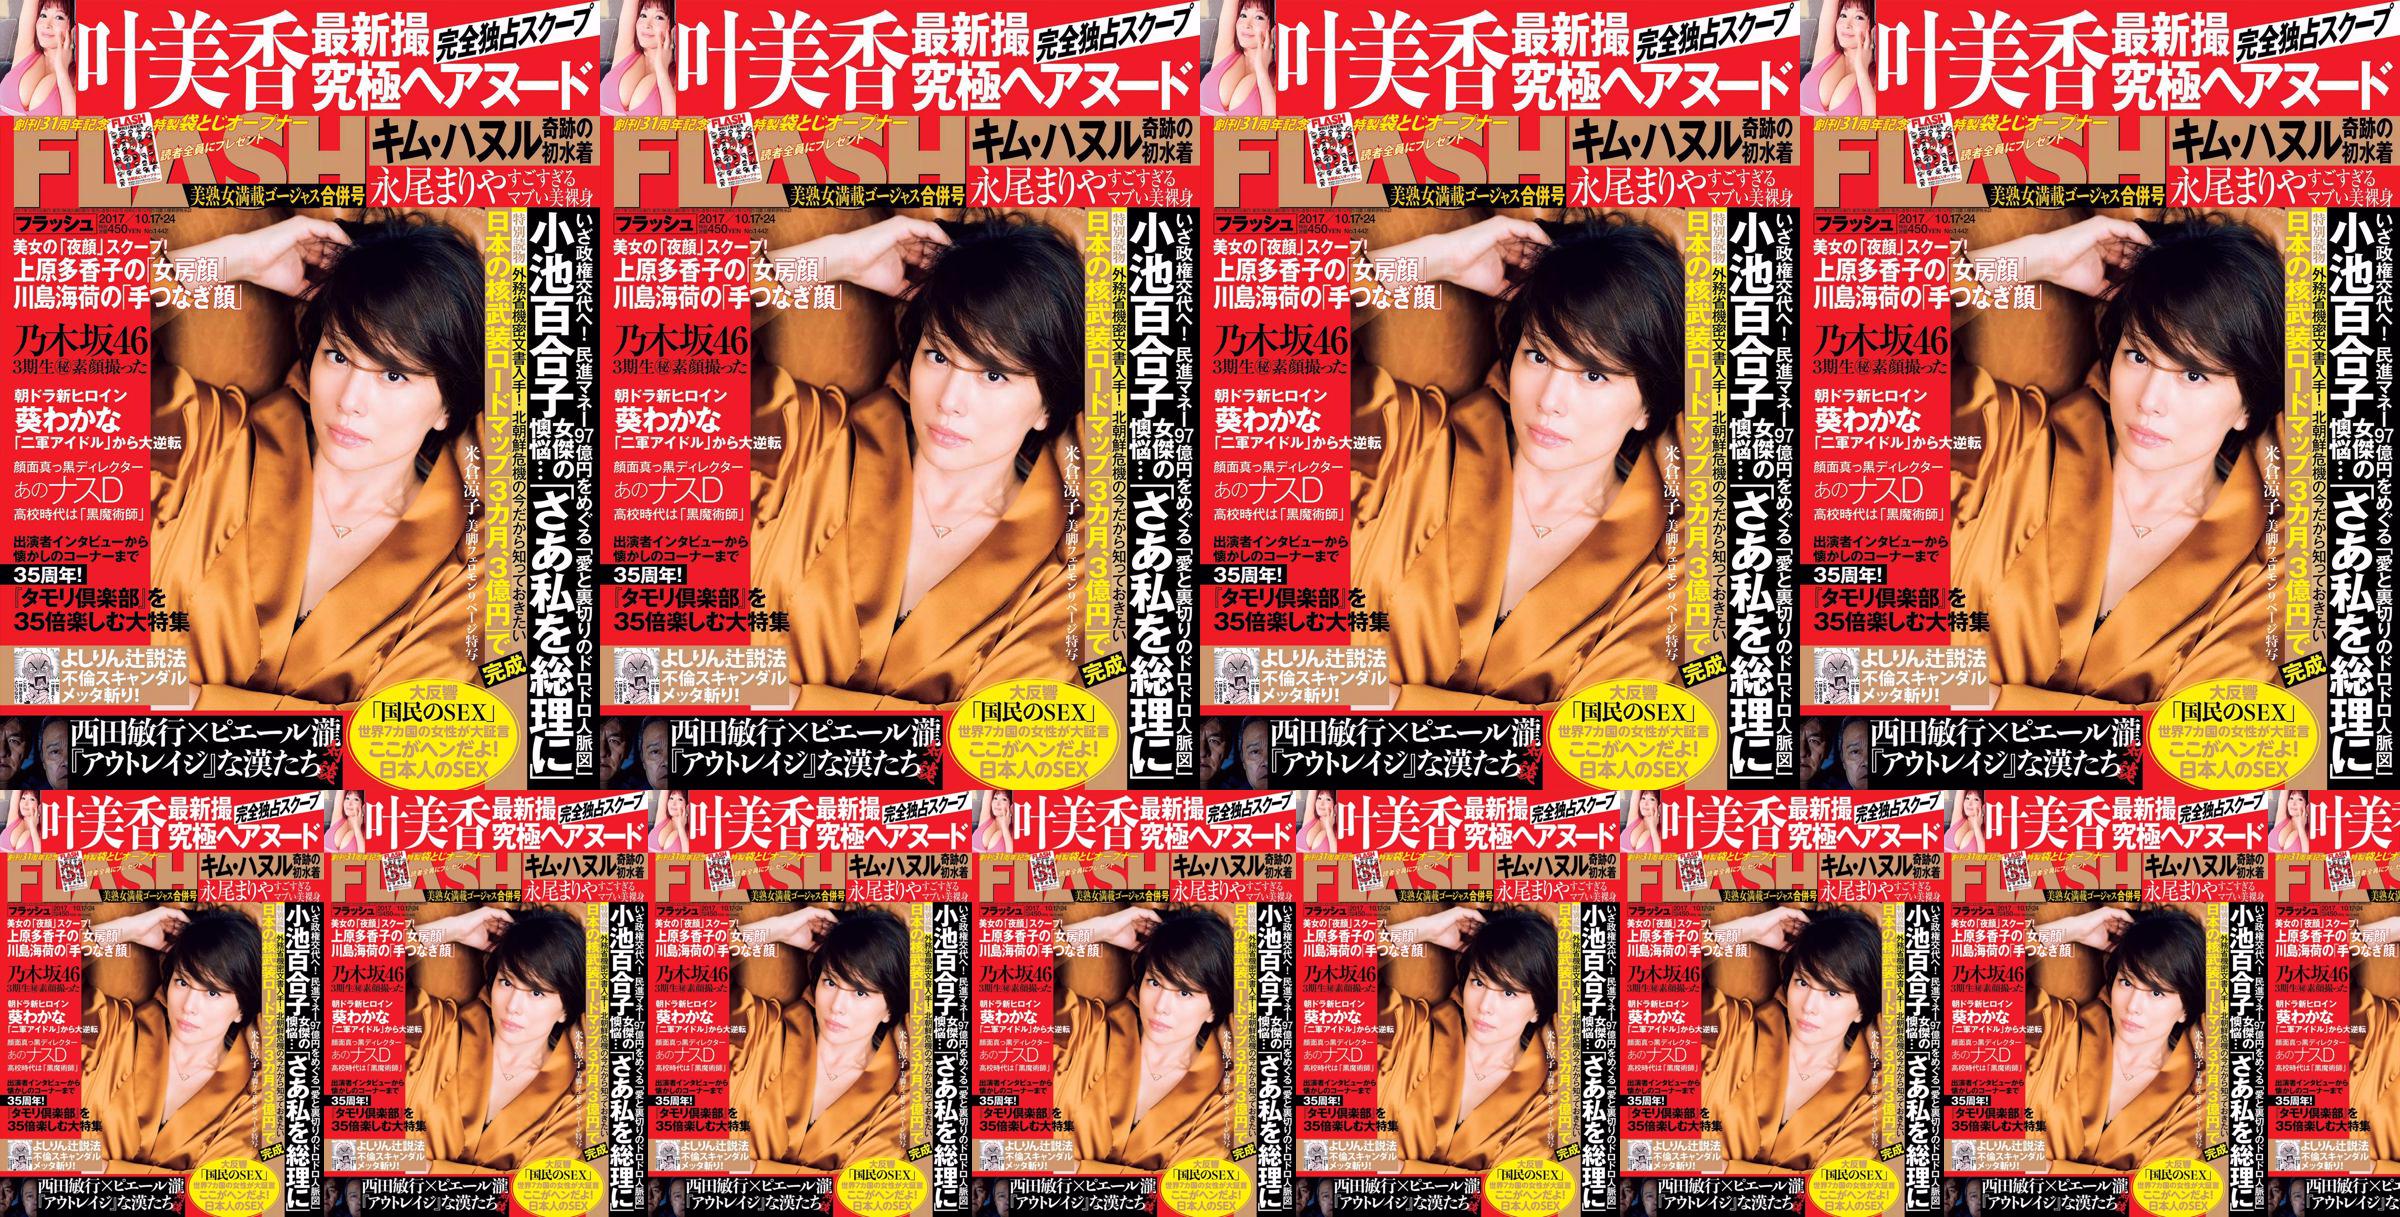 [FLASH] Bunga Yonekura Ryoko Ye Meixiang Tachibana Rin Nagao Rika 2017.10.17-24 Majalah Foto No.aad03f Halaman 1